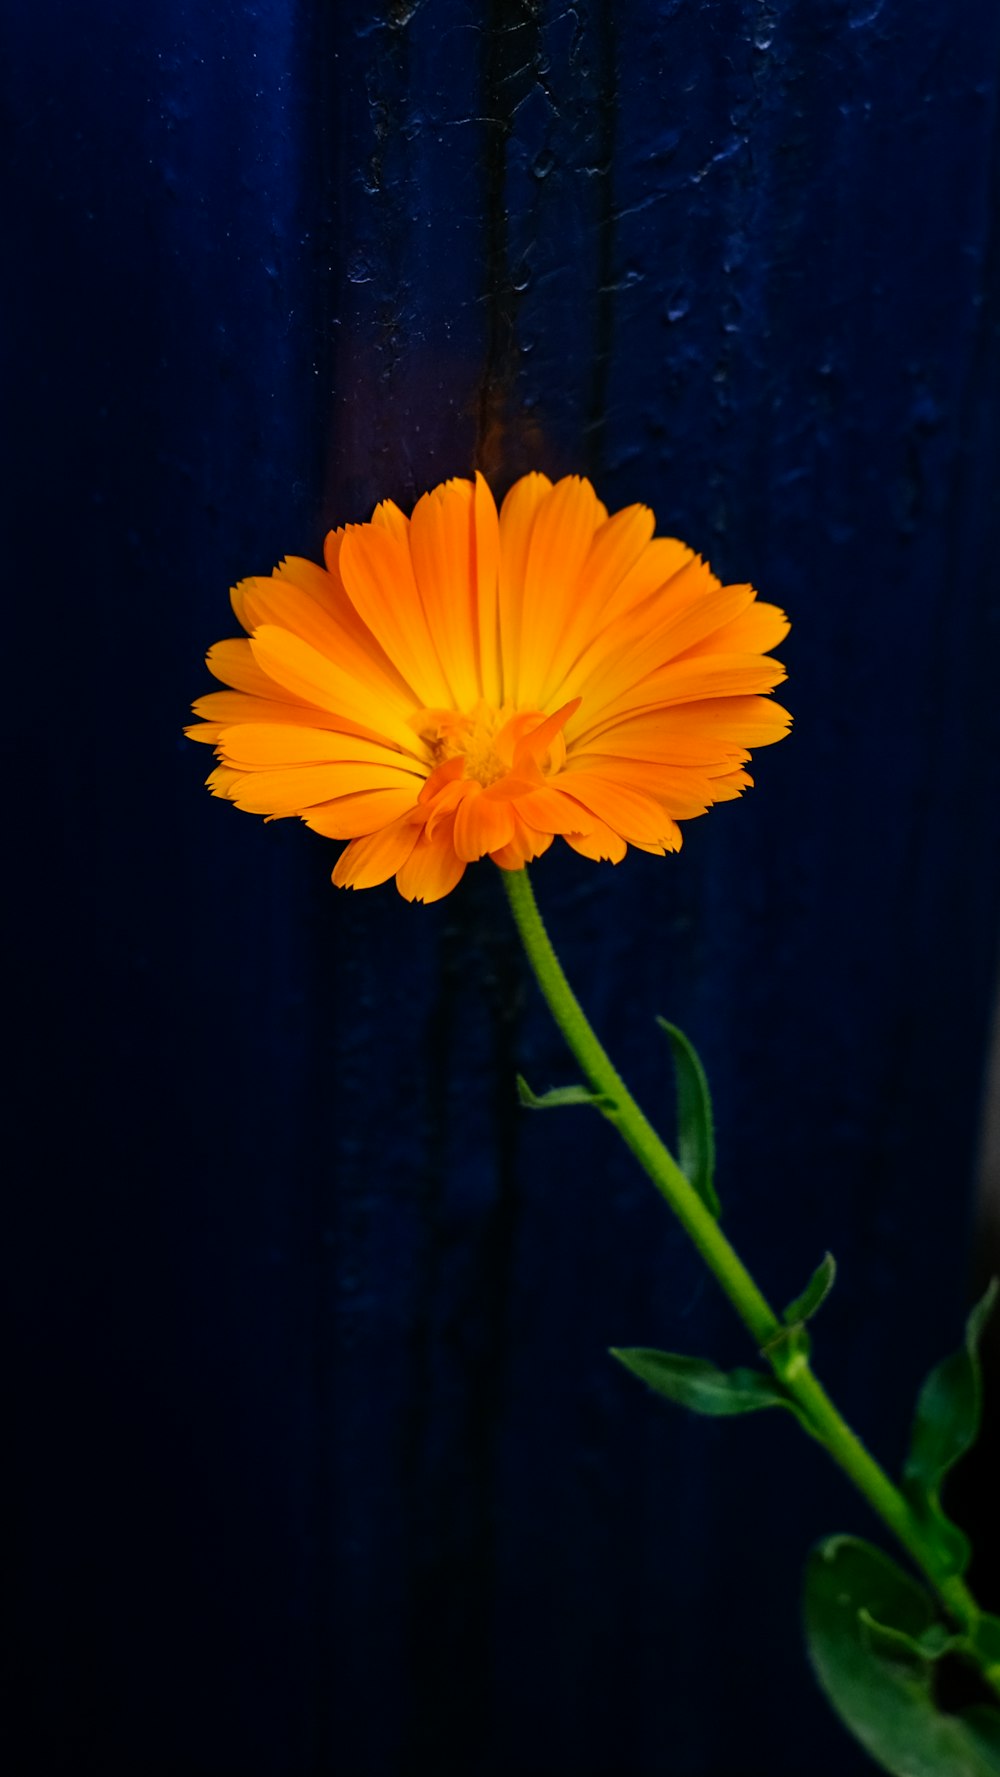 Orange flower in close up photography photo – Free Orange Image on ...